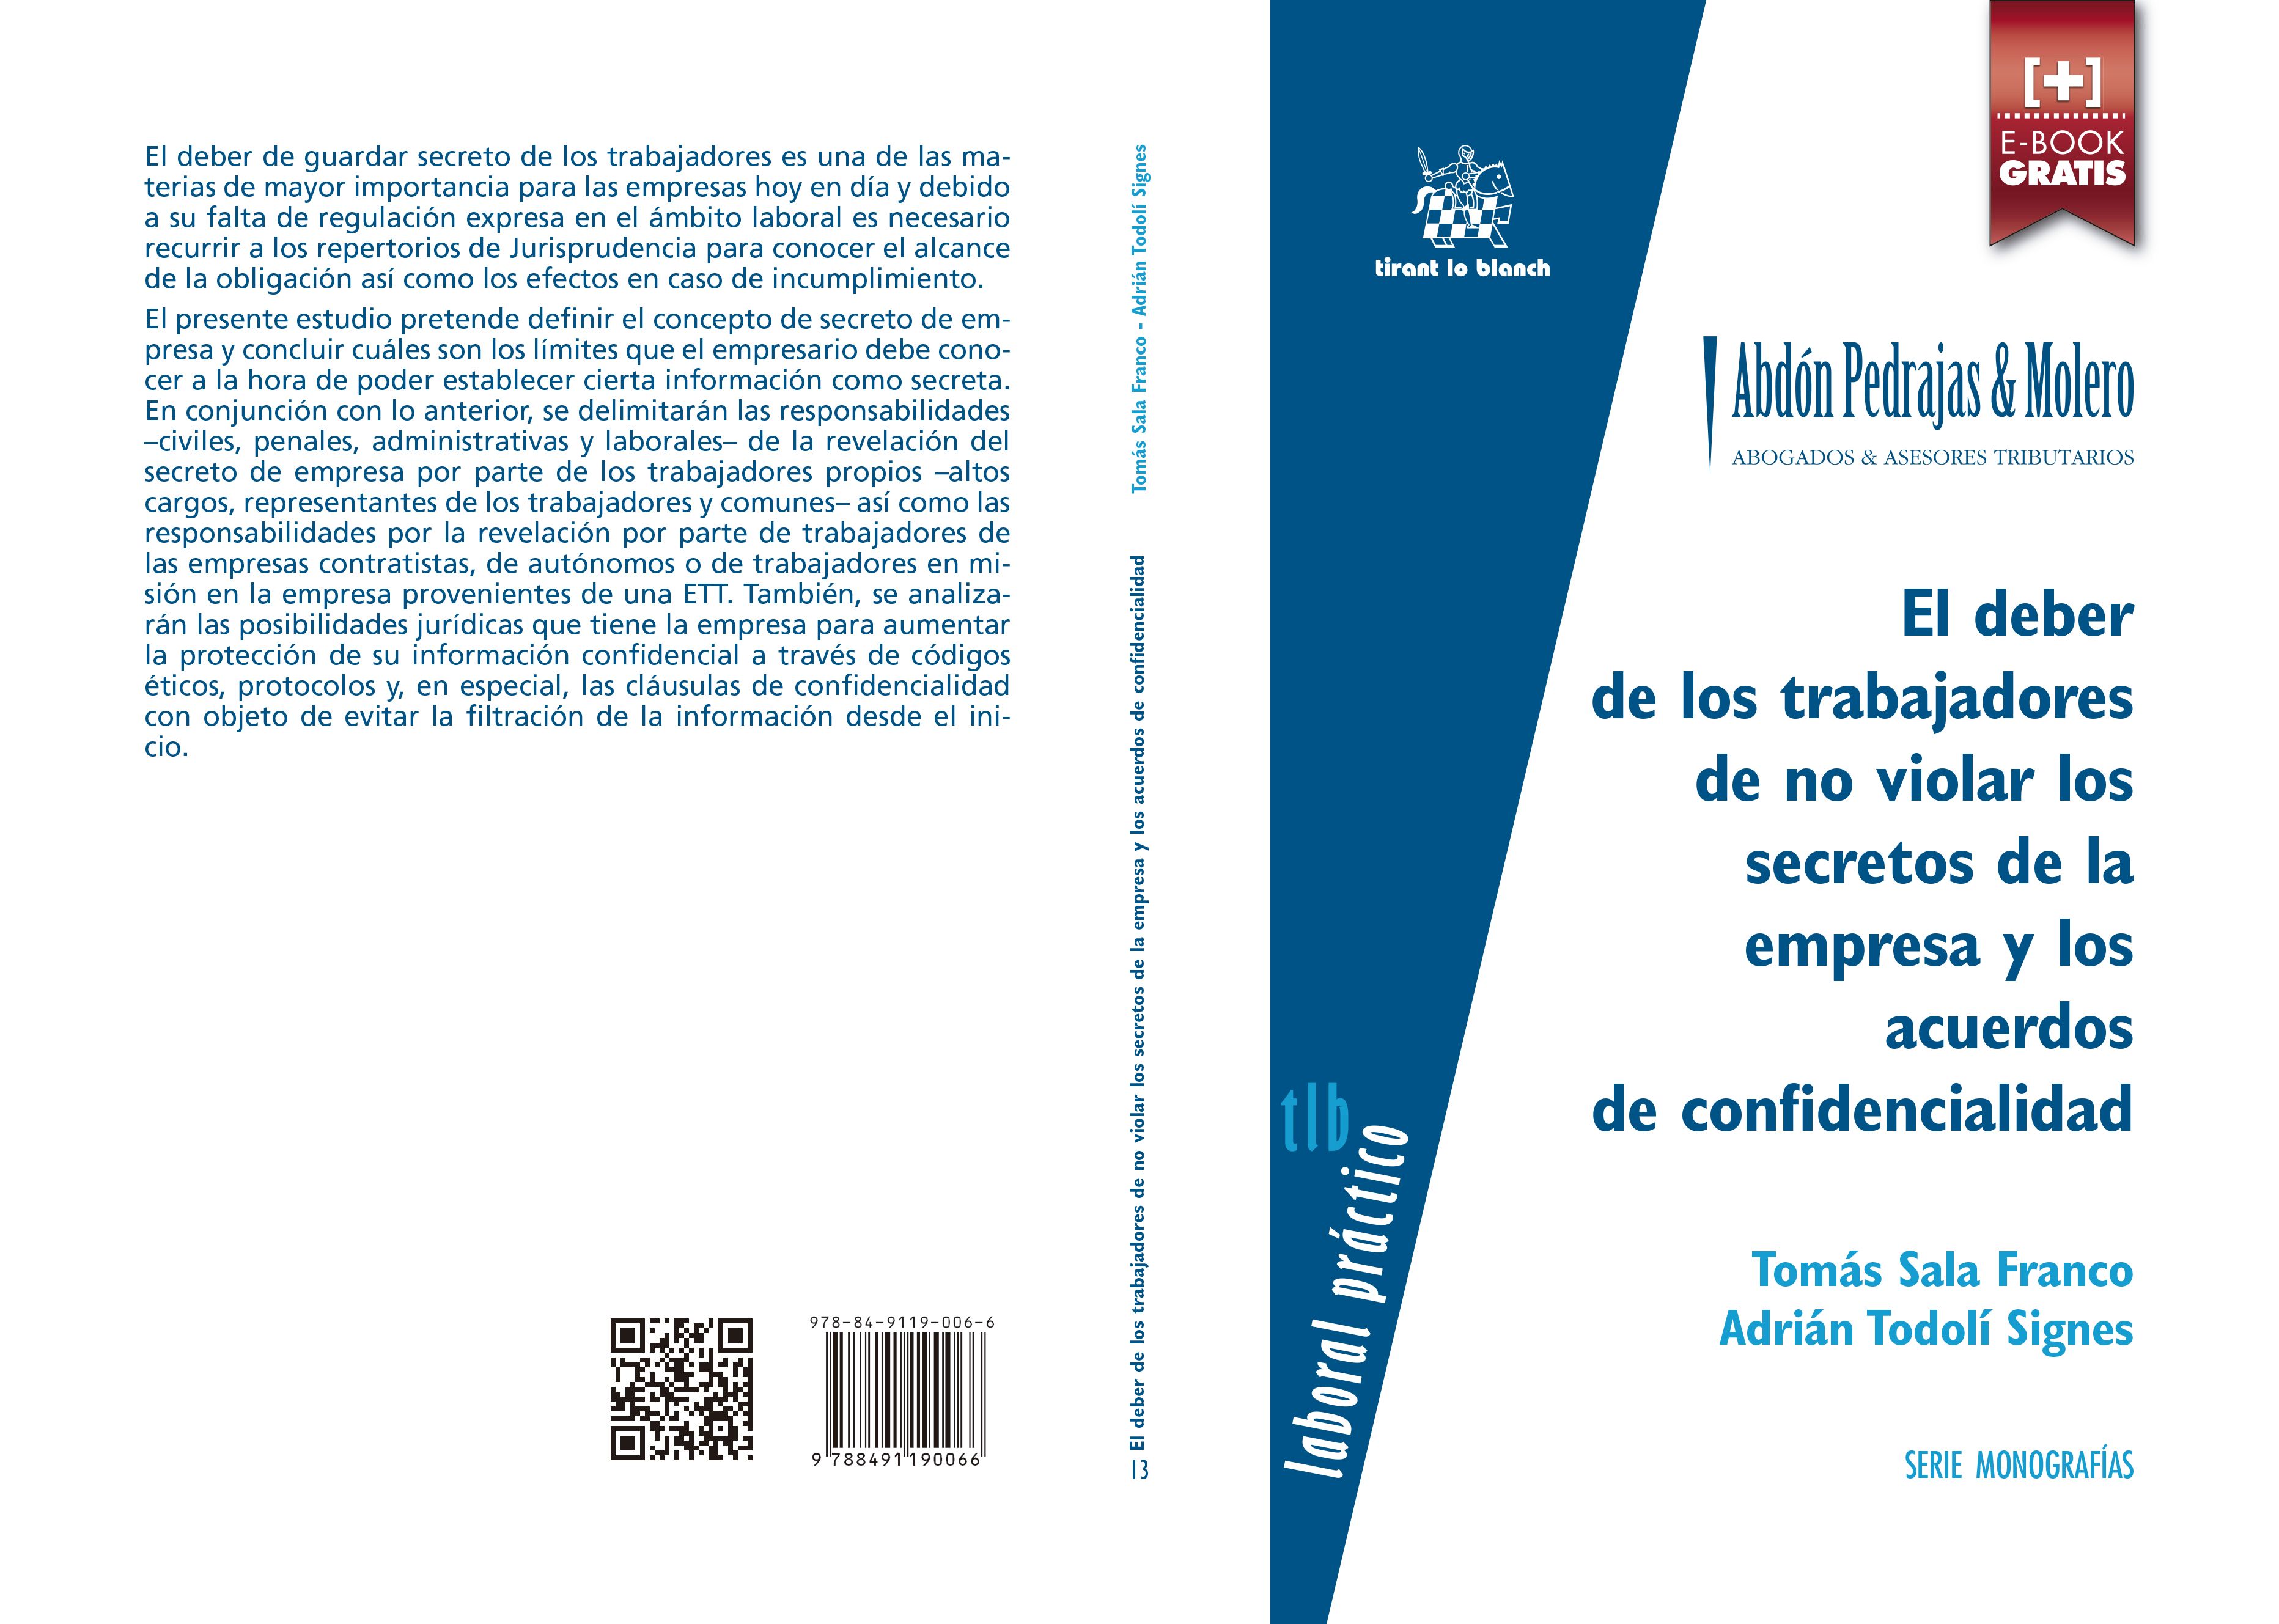 Nueva Monografía "Colección Laboral Práctico" dirigida por Abdón Pedrajas & Molero (Editorial Tirant) 